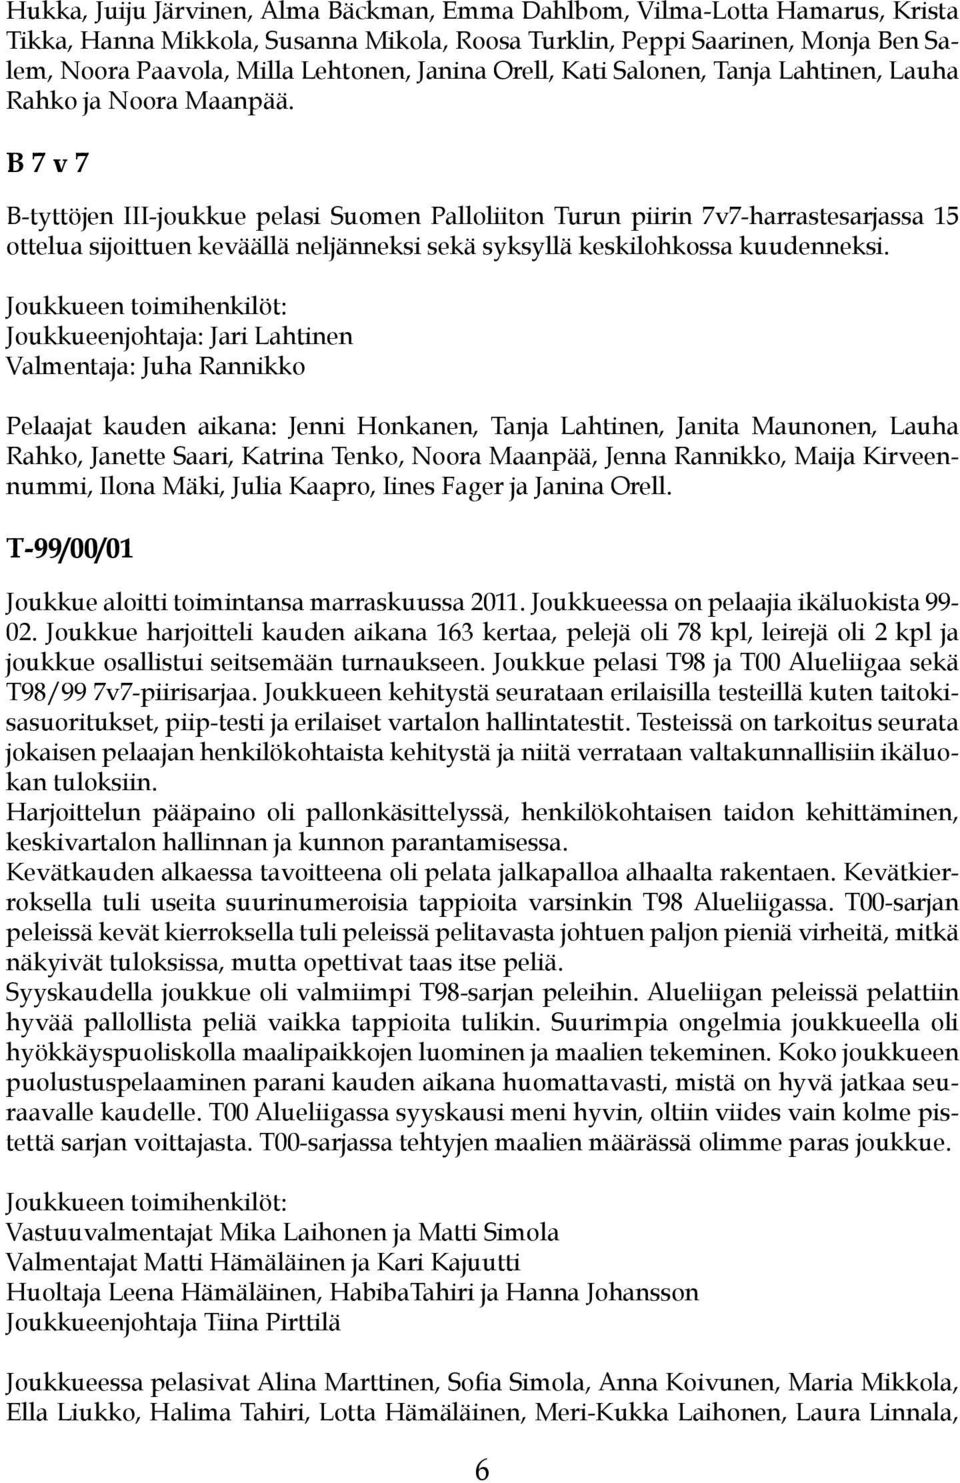 B 7 v 7 B-tyttöjen III-joukkue pelasi Suomen Palloliiton Turun piirin 7v7-harrastesarjassa 15 ottelua sijoittuen keväällä neljänneksi sekä syksyllä keskilohkossa kuudenneksi.